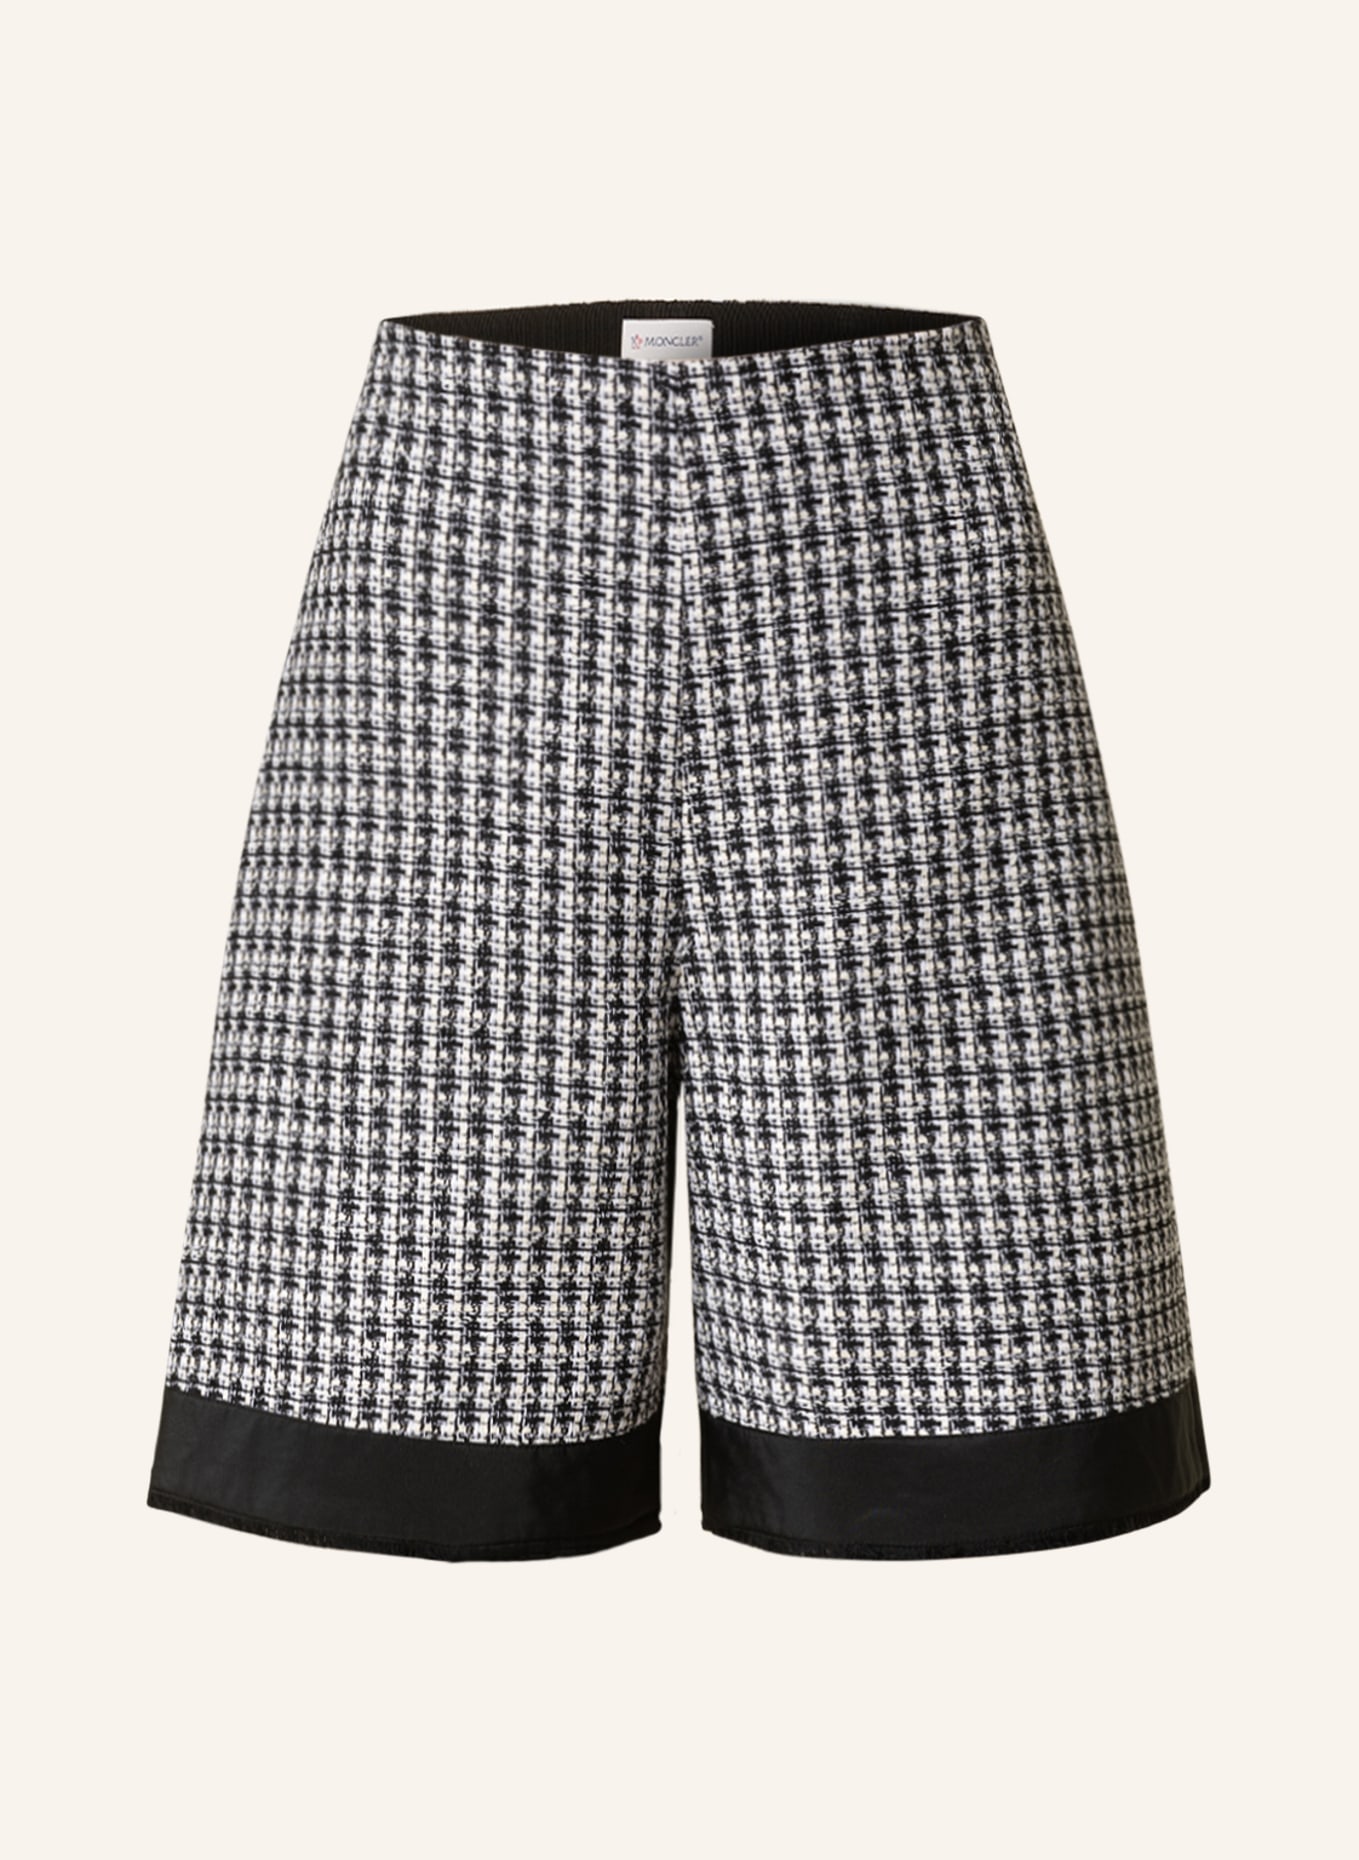 MONCLER Tweed-Shorts, Farbe: SCHWARZ/ WEISS (Bild 1)